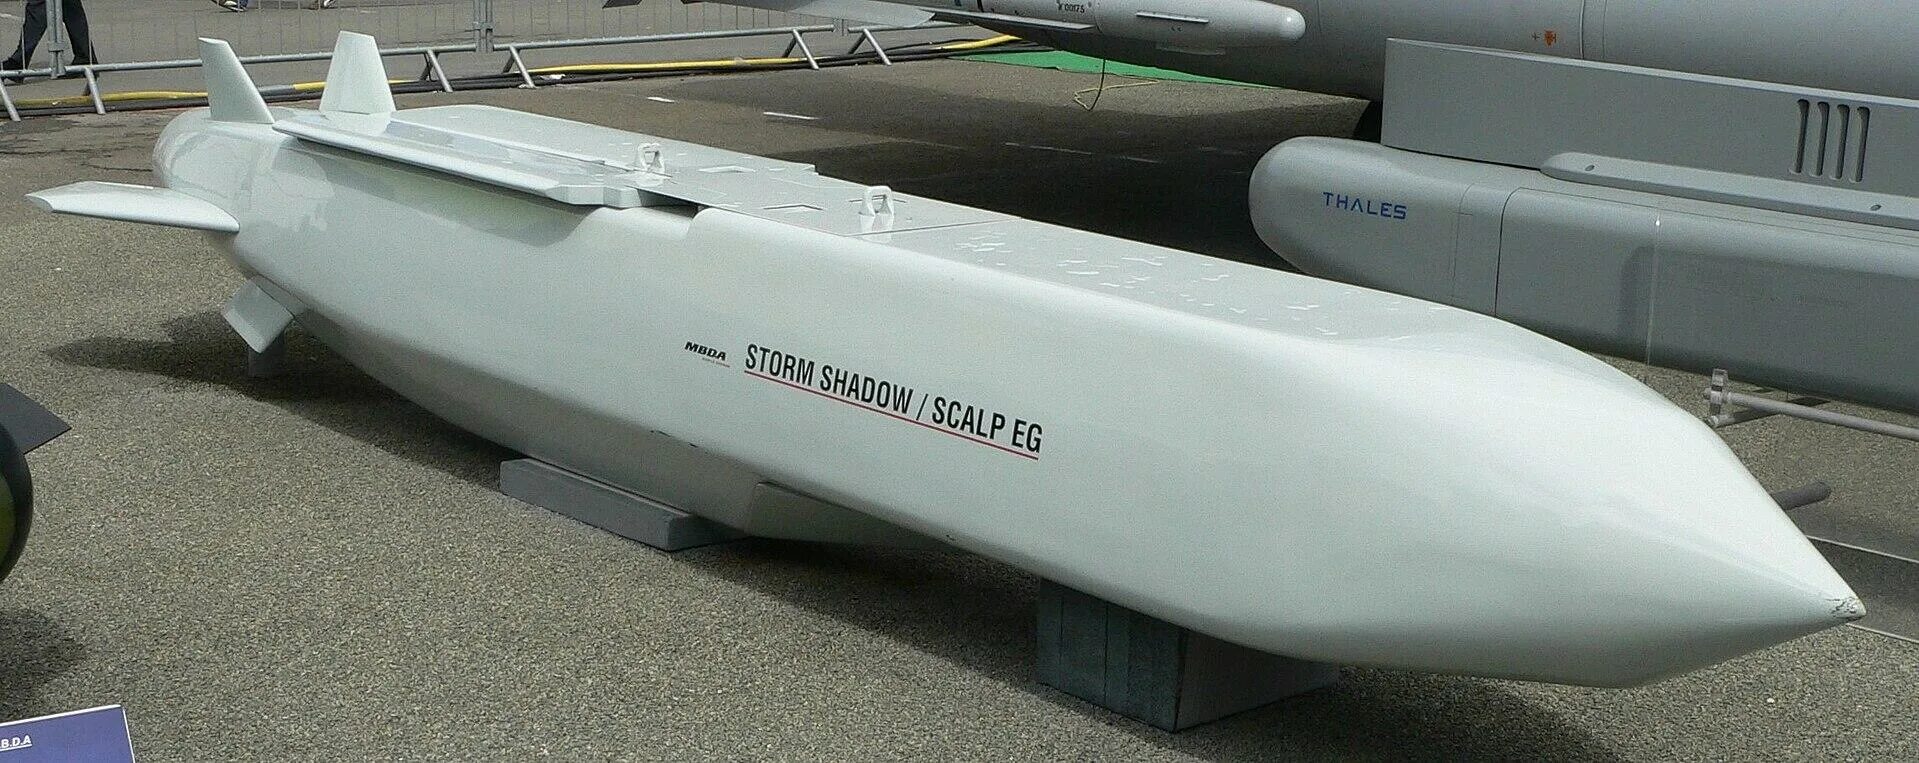 Ракета Scalp EG. Крылатая ракета Storm Shadow / Scalp. Крылатая ракета Scalp Naval. Ракета AGM-158 JASSM.